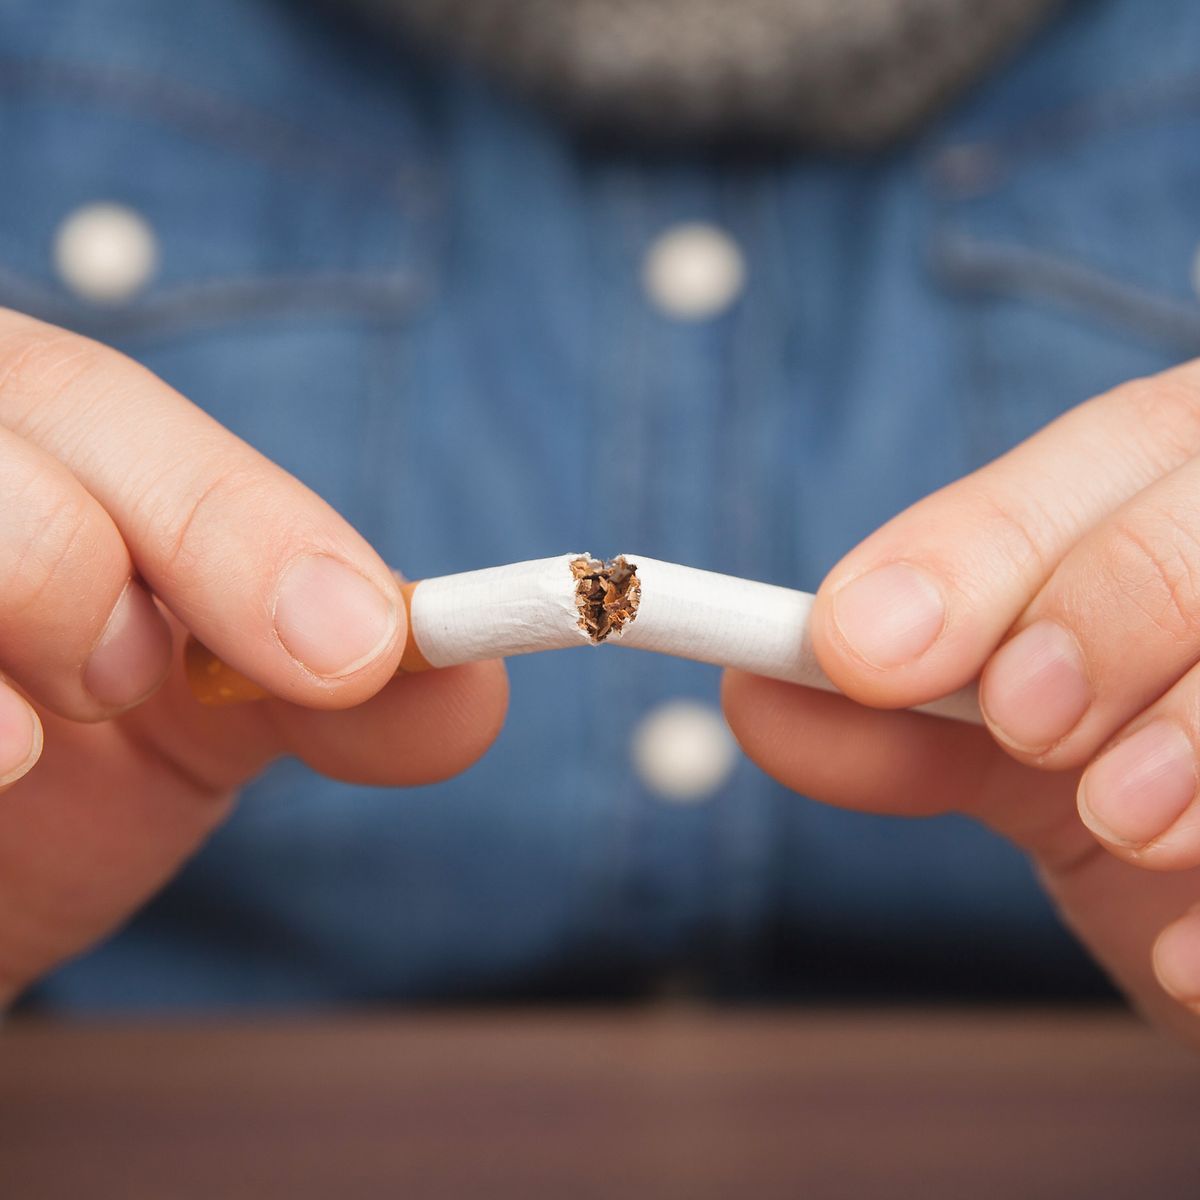 Abschied von der Zigarette – Diese Tricks machen es leichter